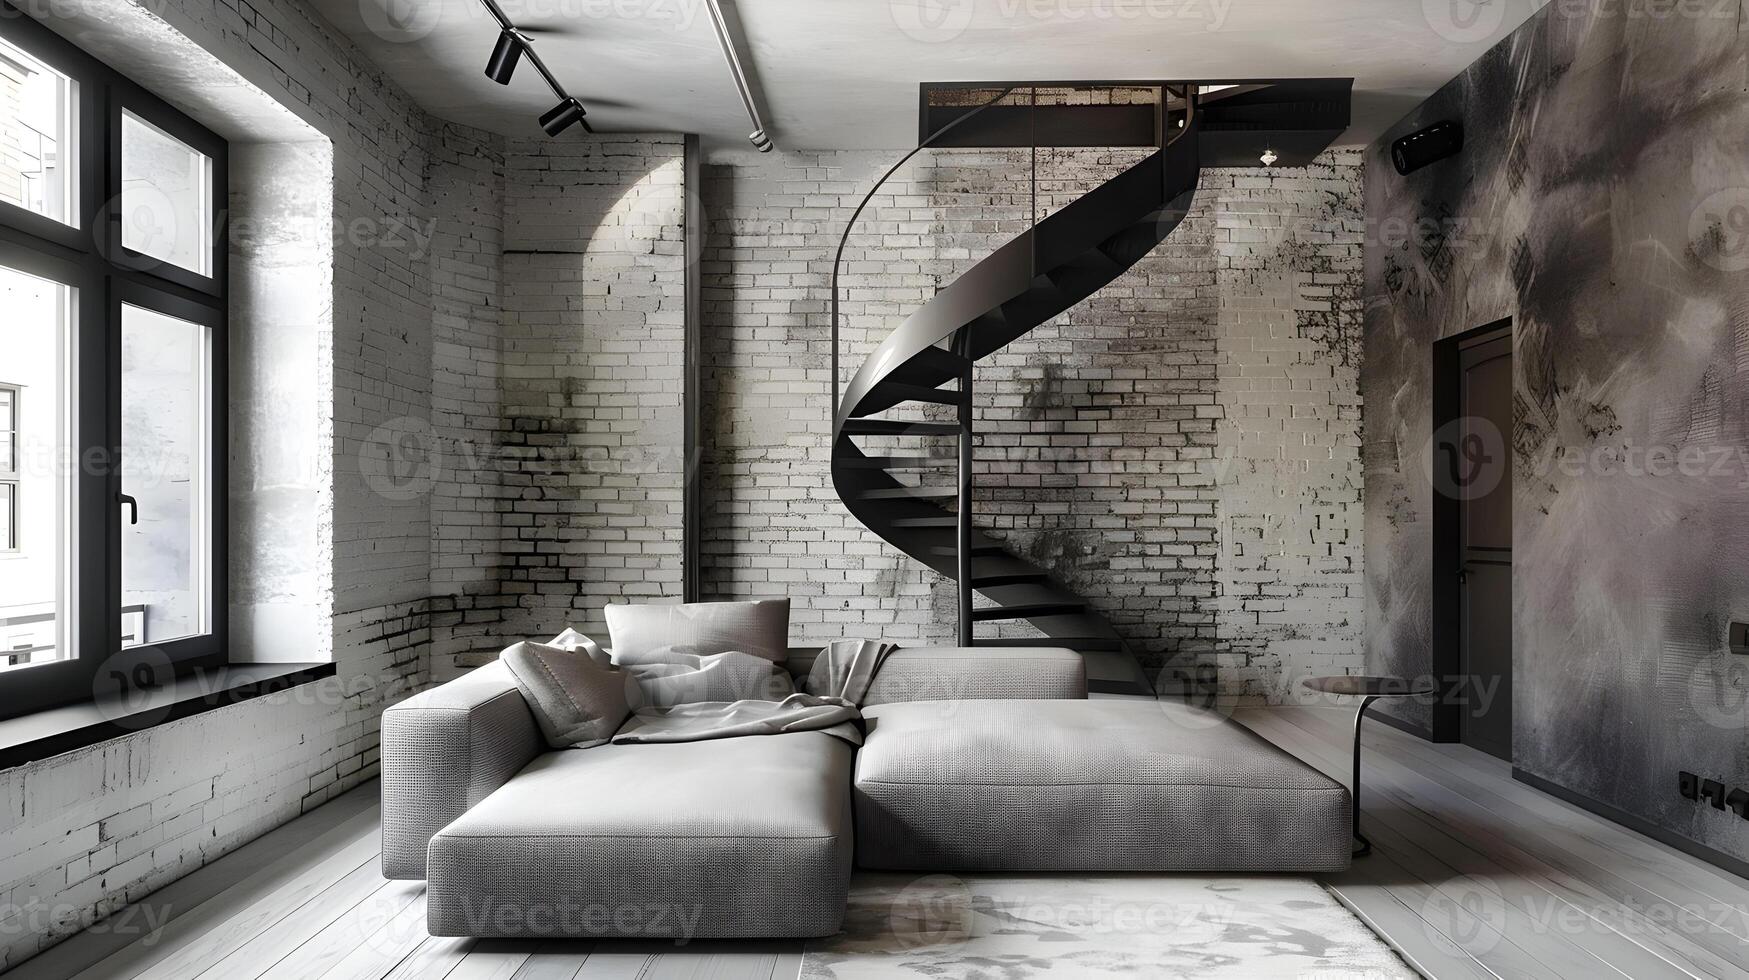 sofistikerad loft levande med spiral trappa och tegel väggar visa upp elegant minimalistisk interiör design foto